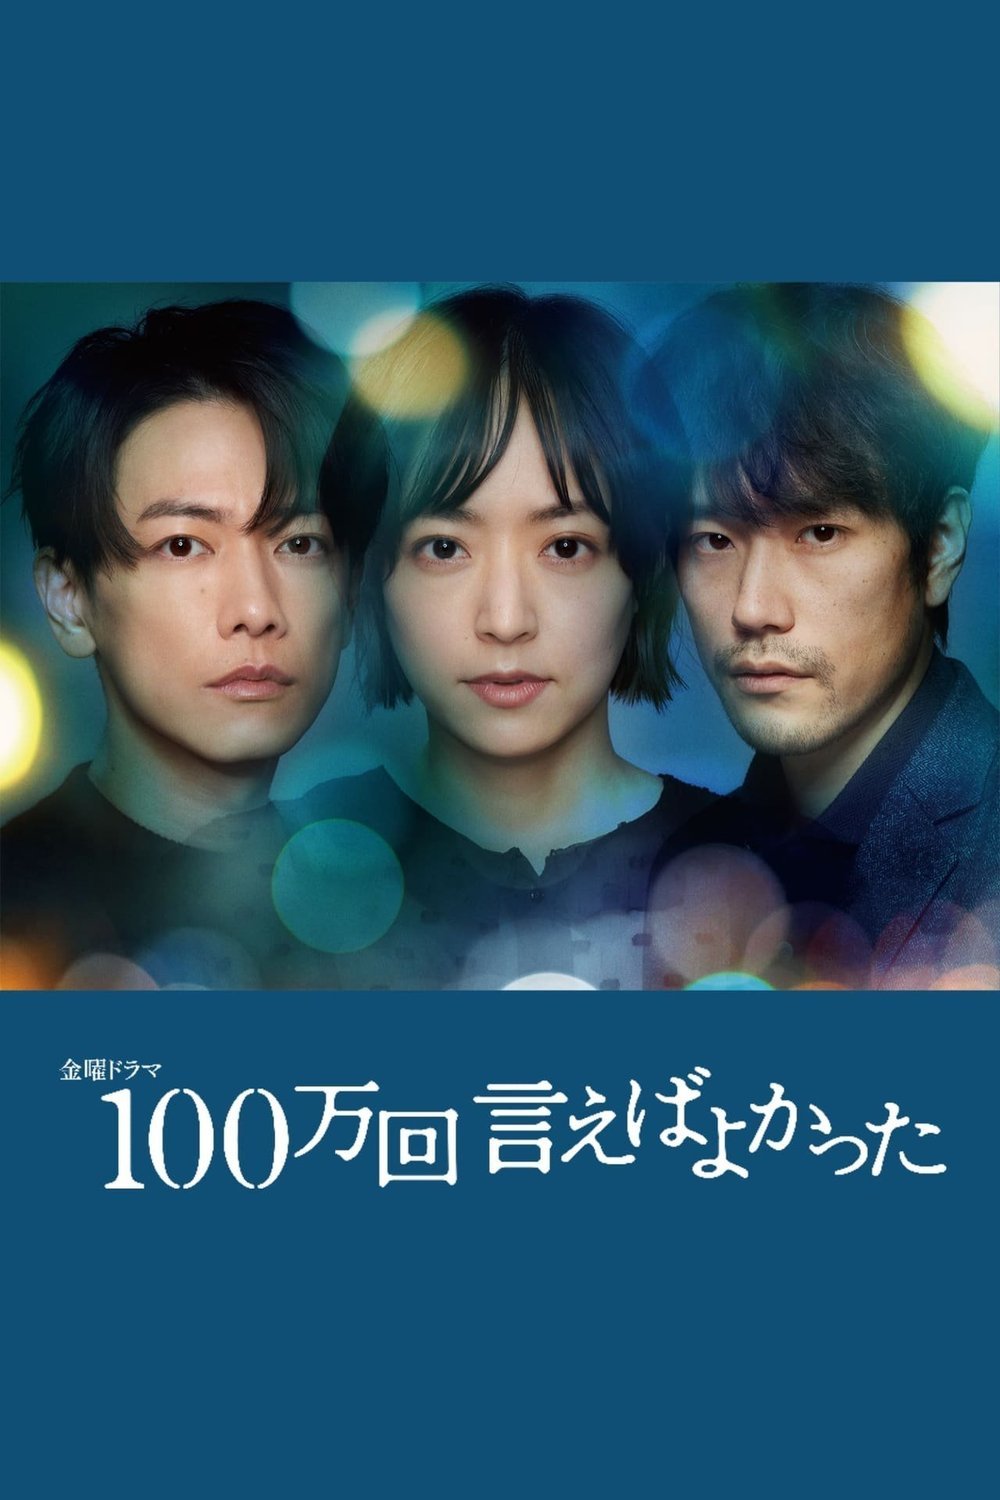 Japanese poster of the movie 100man-kai ieba yokatta